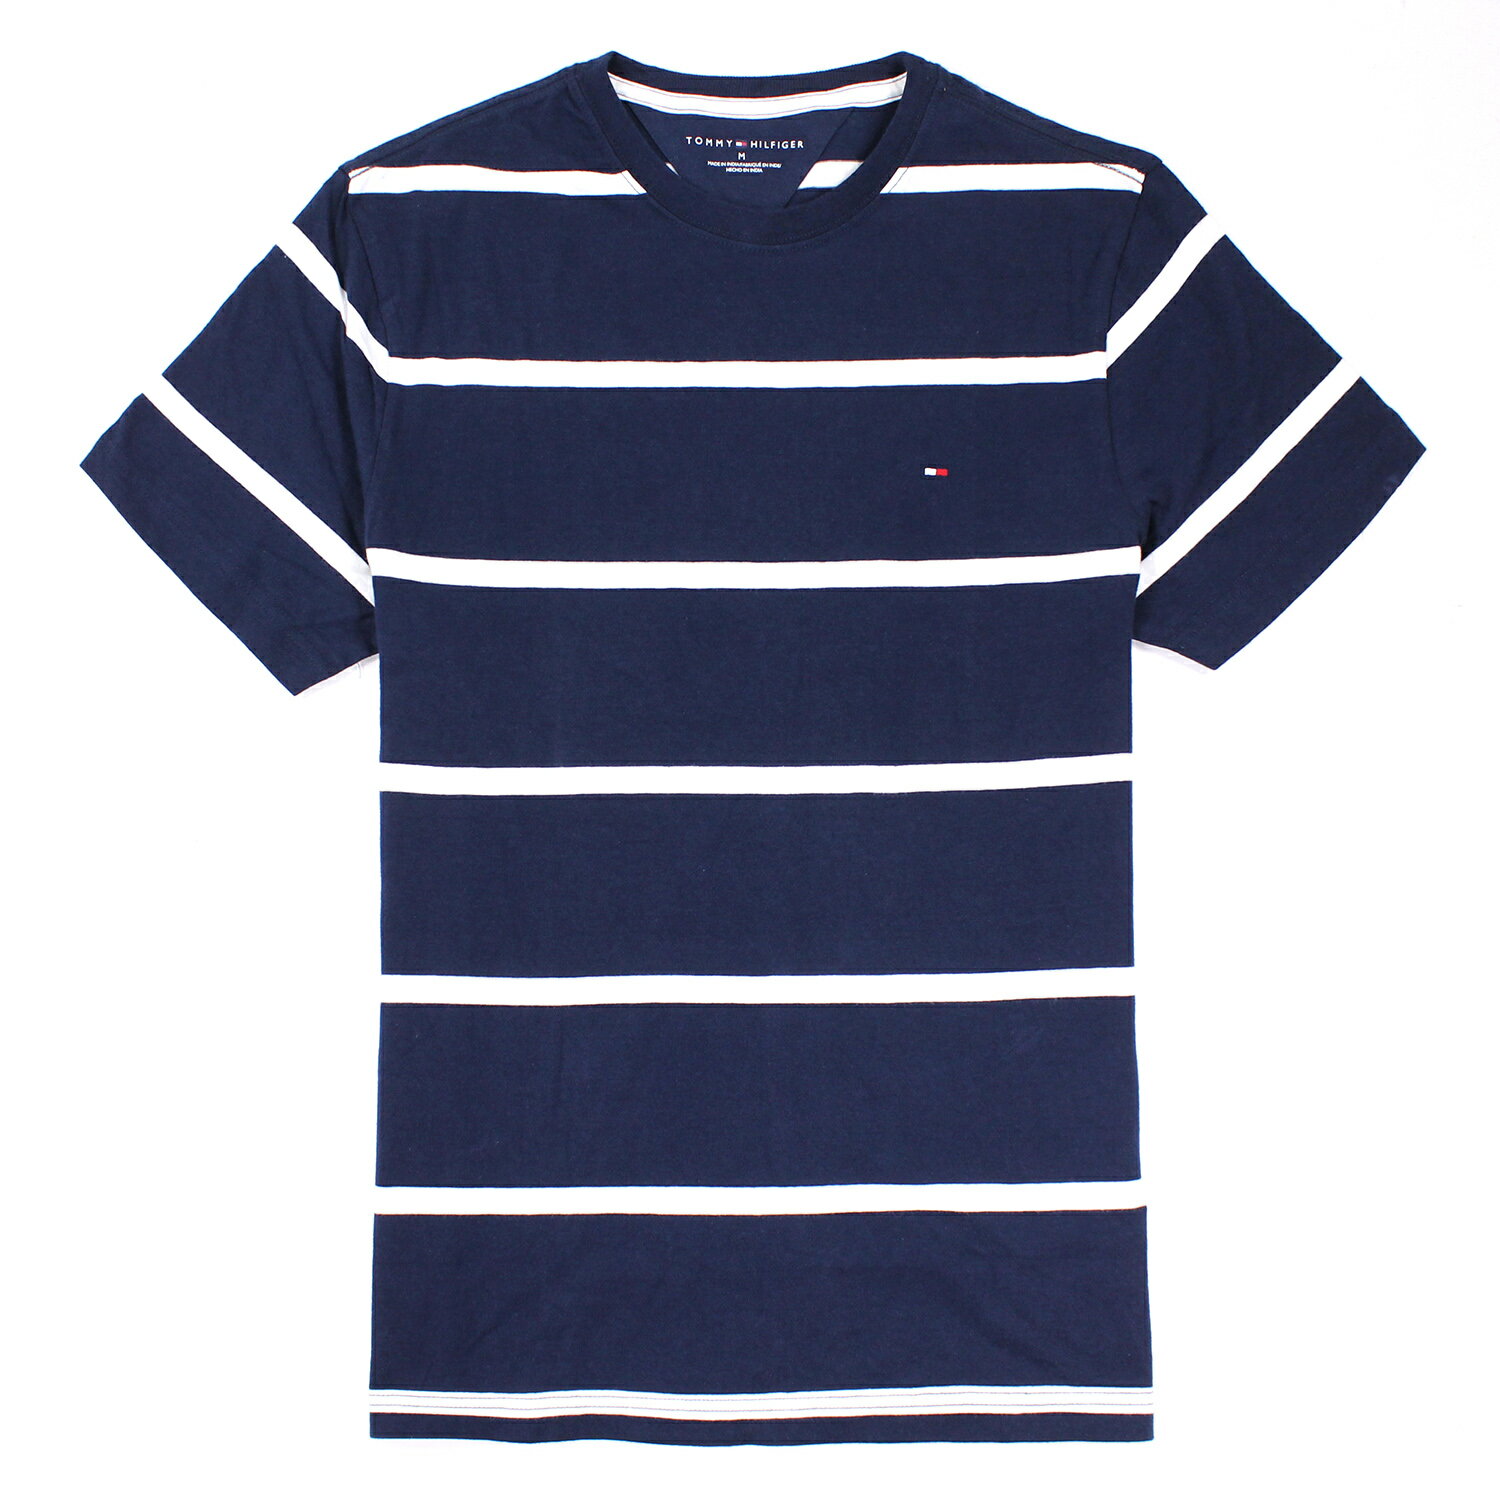 美國百分百【全新真品】Tommy Hilfiger T恤 TH 男 圓領 T-shirt 短袖 條紋 深藍色 M號 E675